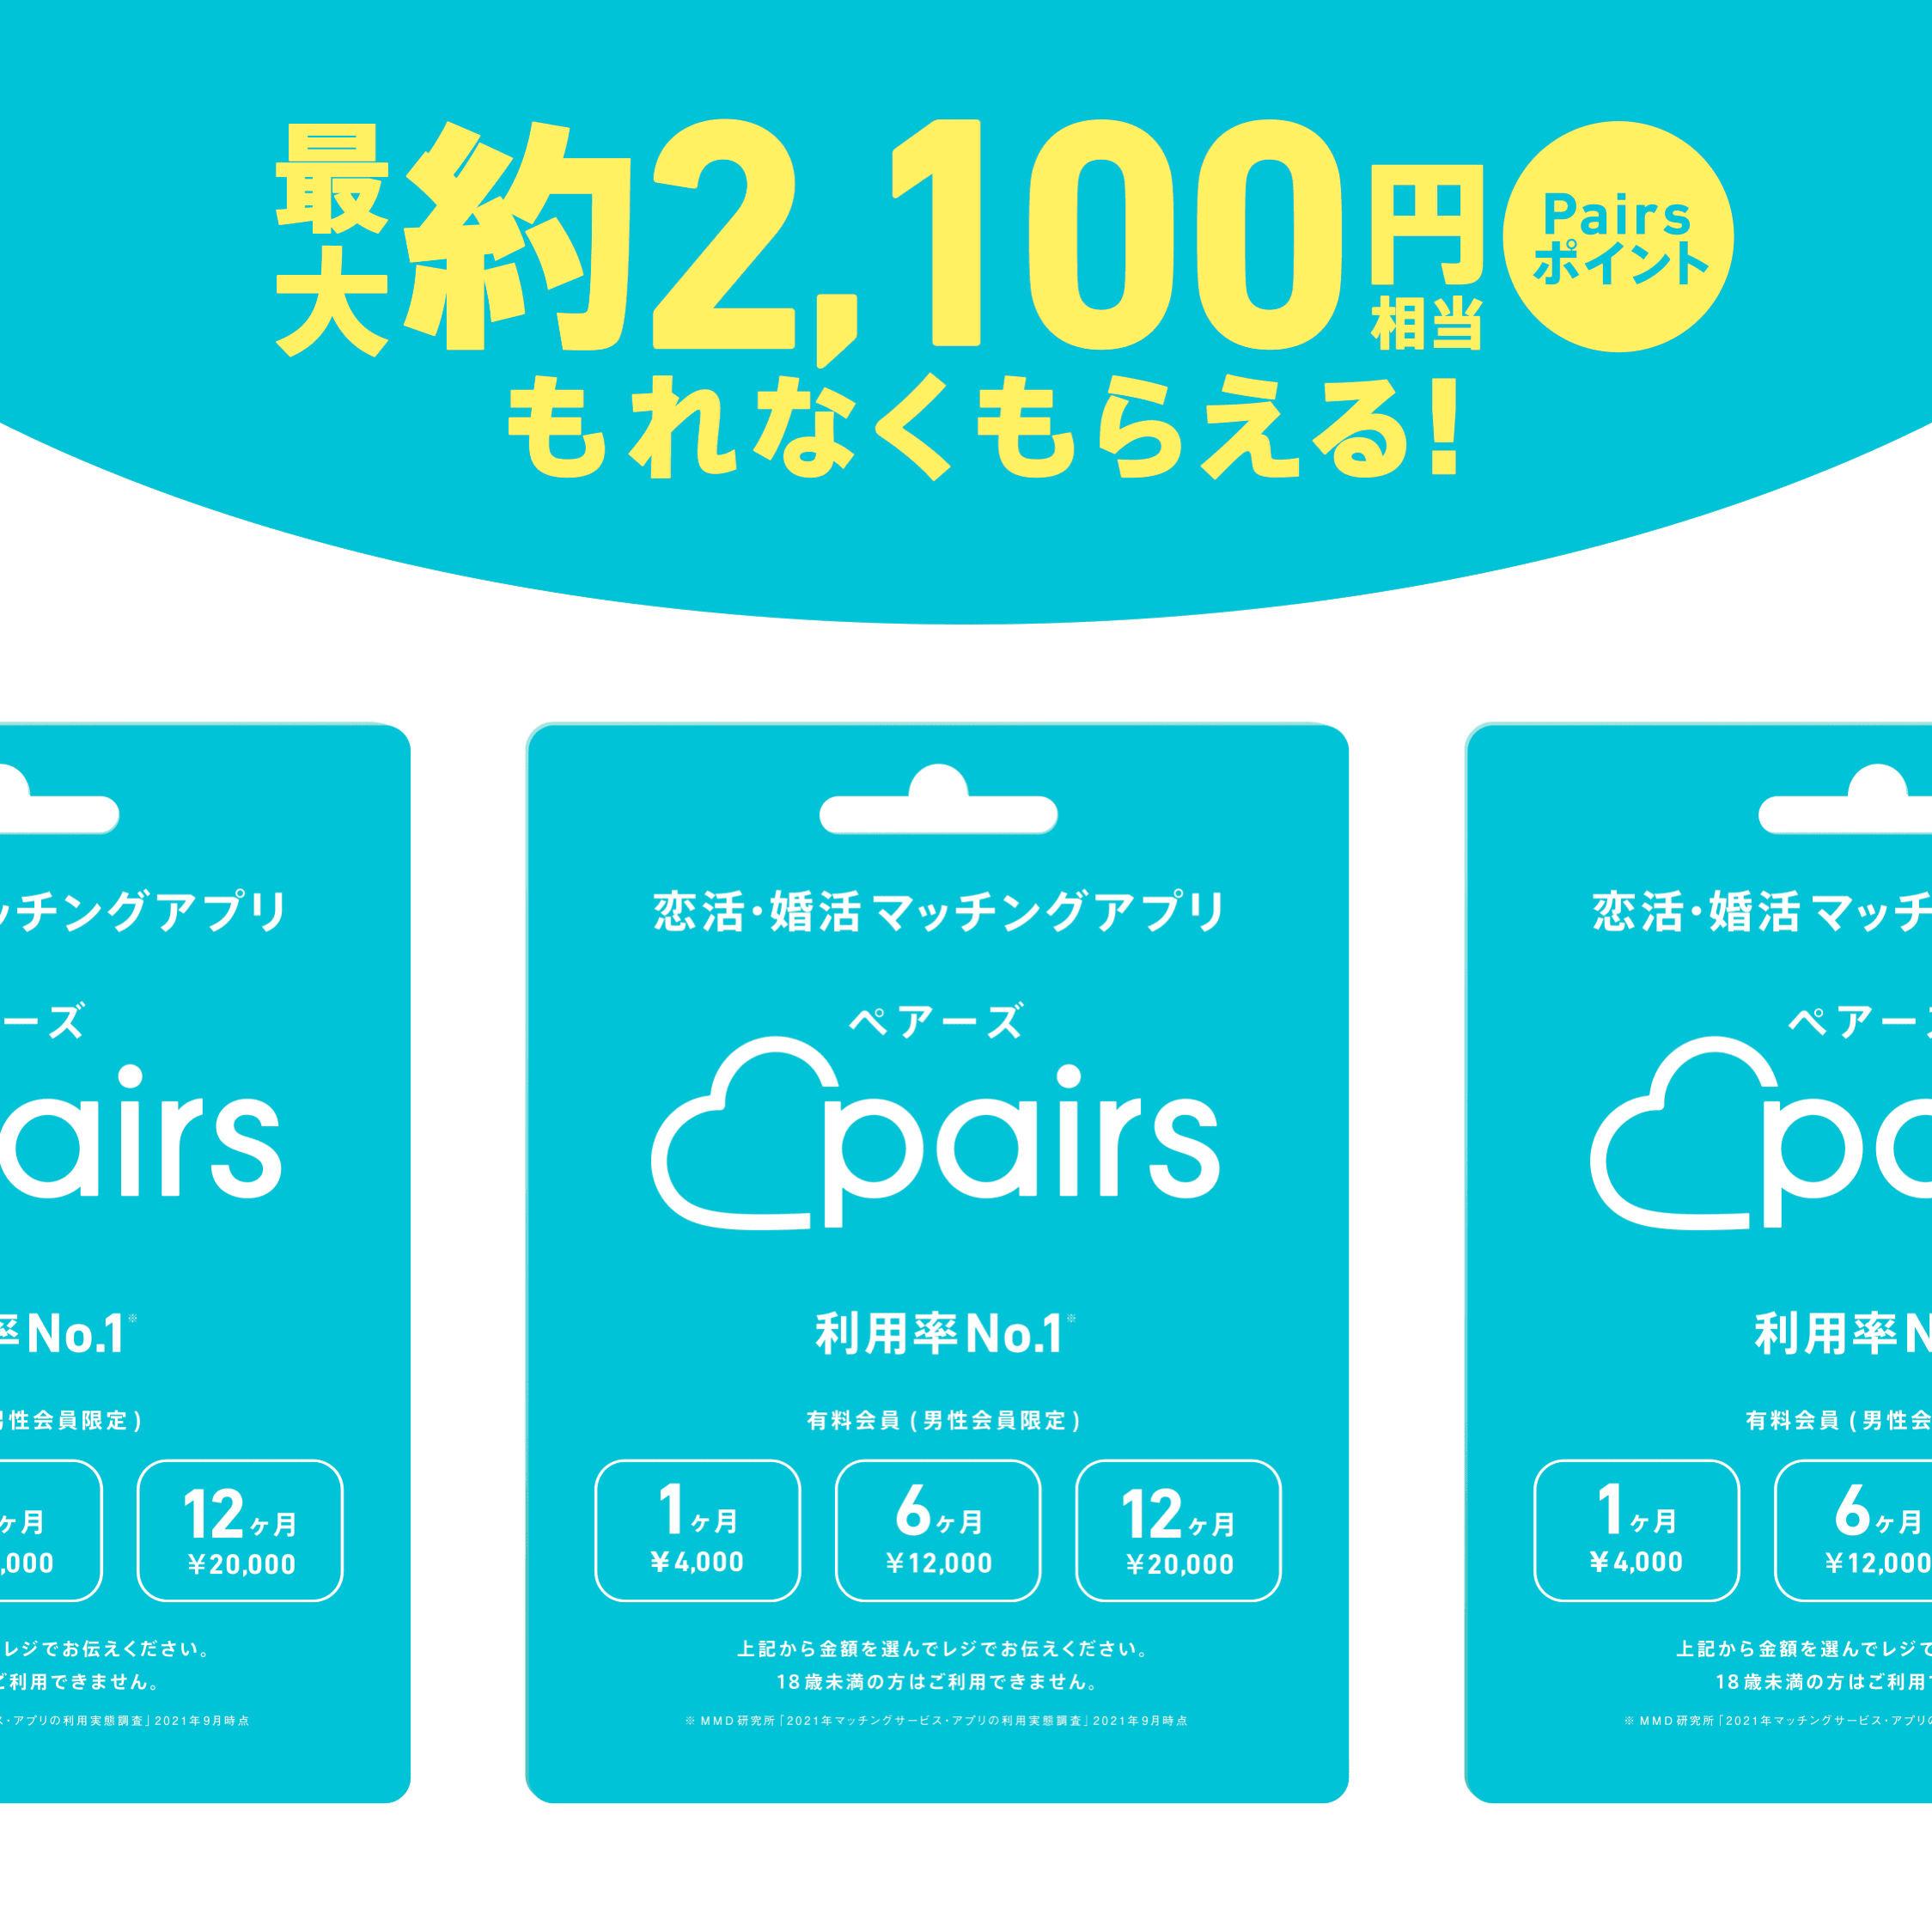 Pairs(ペアーズ) - 恋活・婚活マッチングアプリ